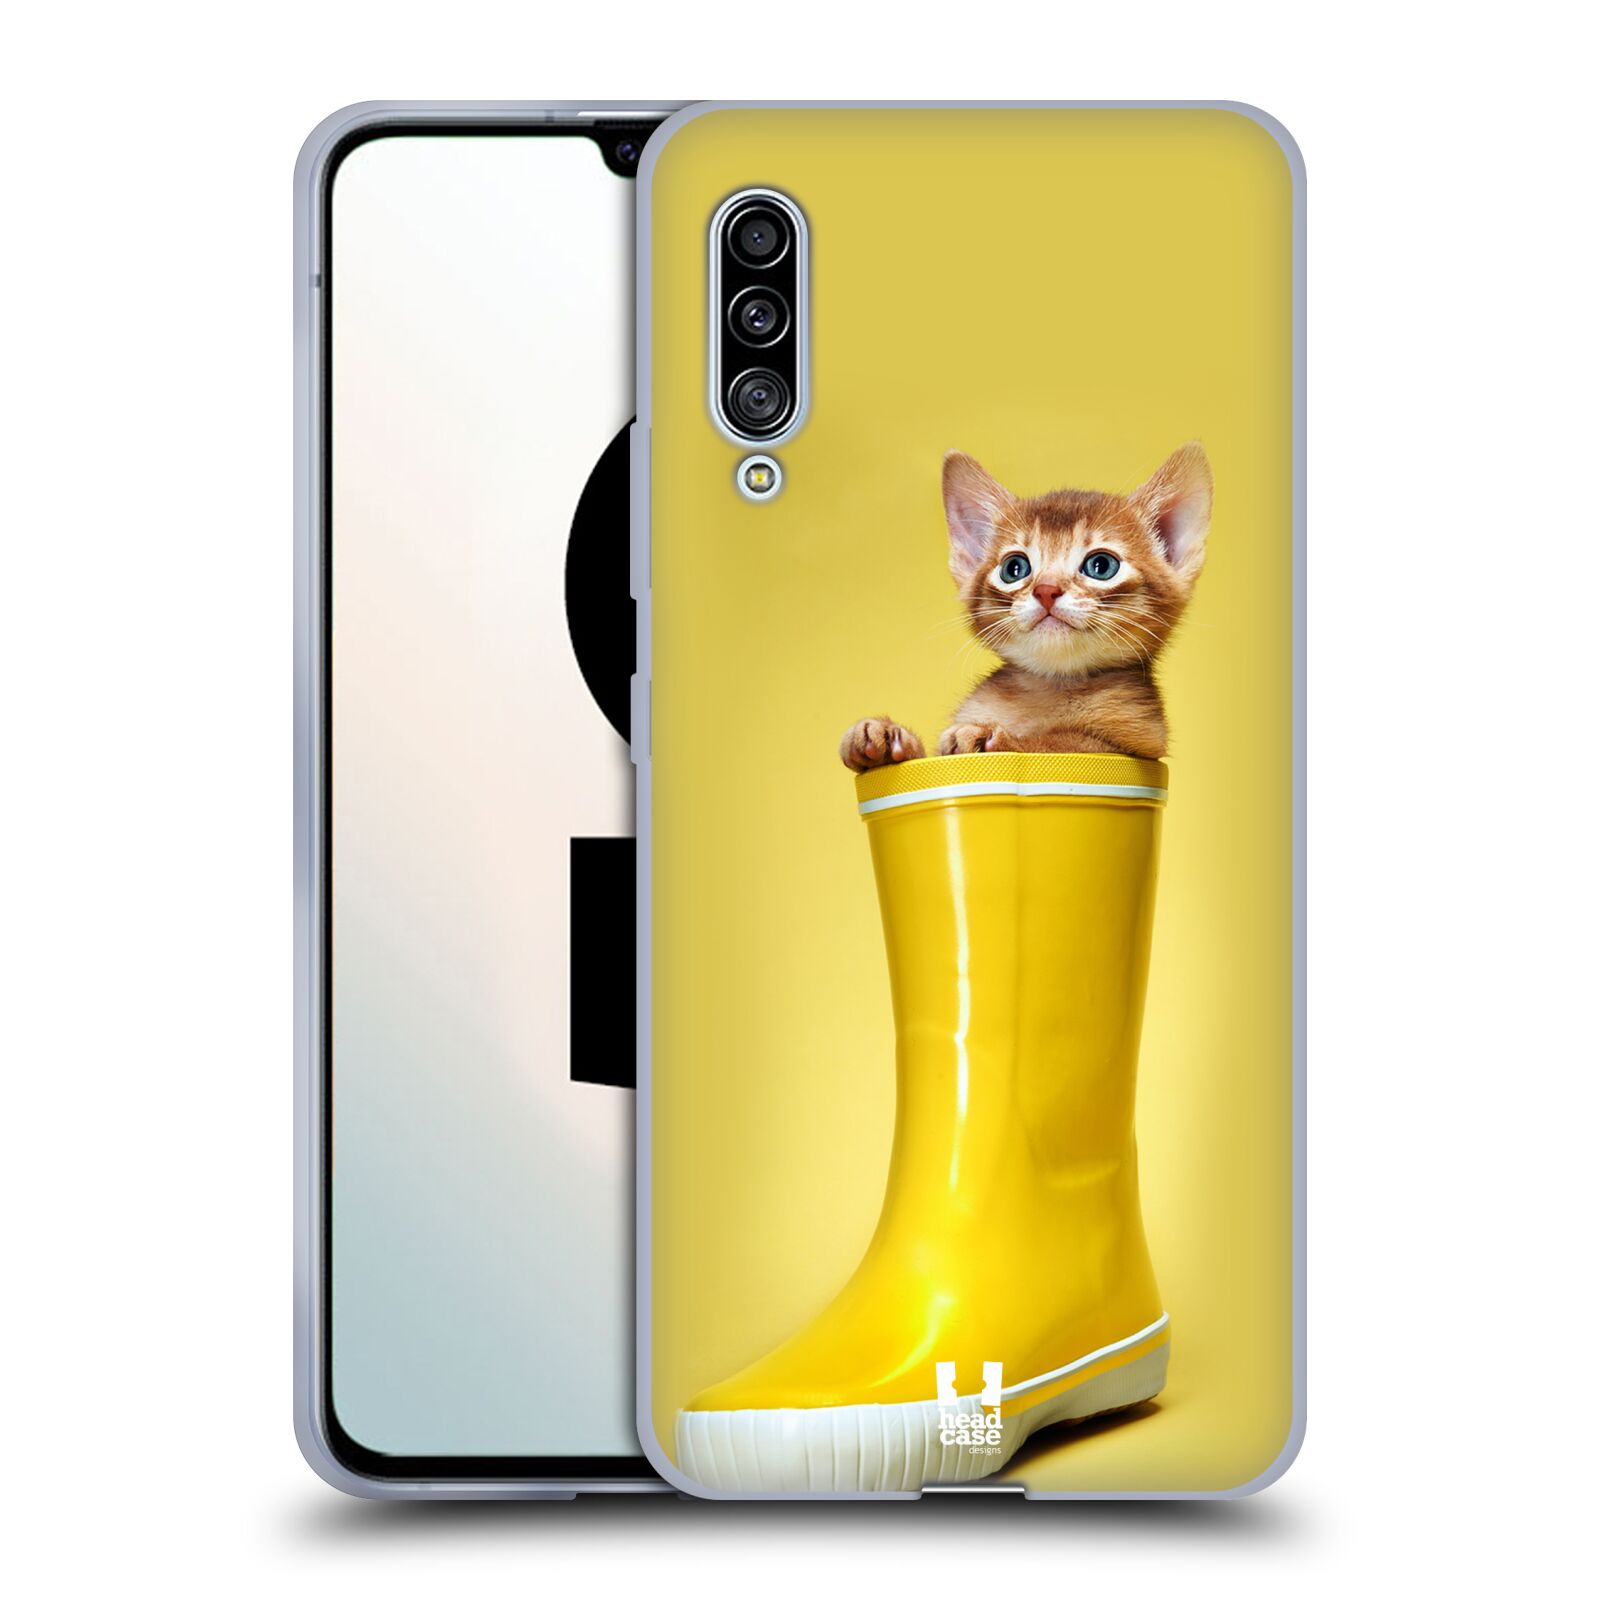 Plastový obal HEAD CASE na mobil Samsung Galaxy A90 5G vzor Legrační zvířátka kotě v botě žlutá